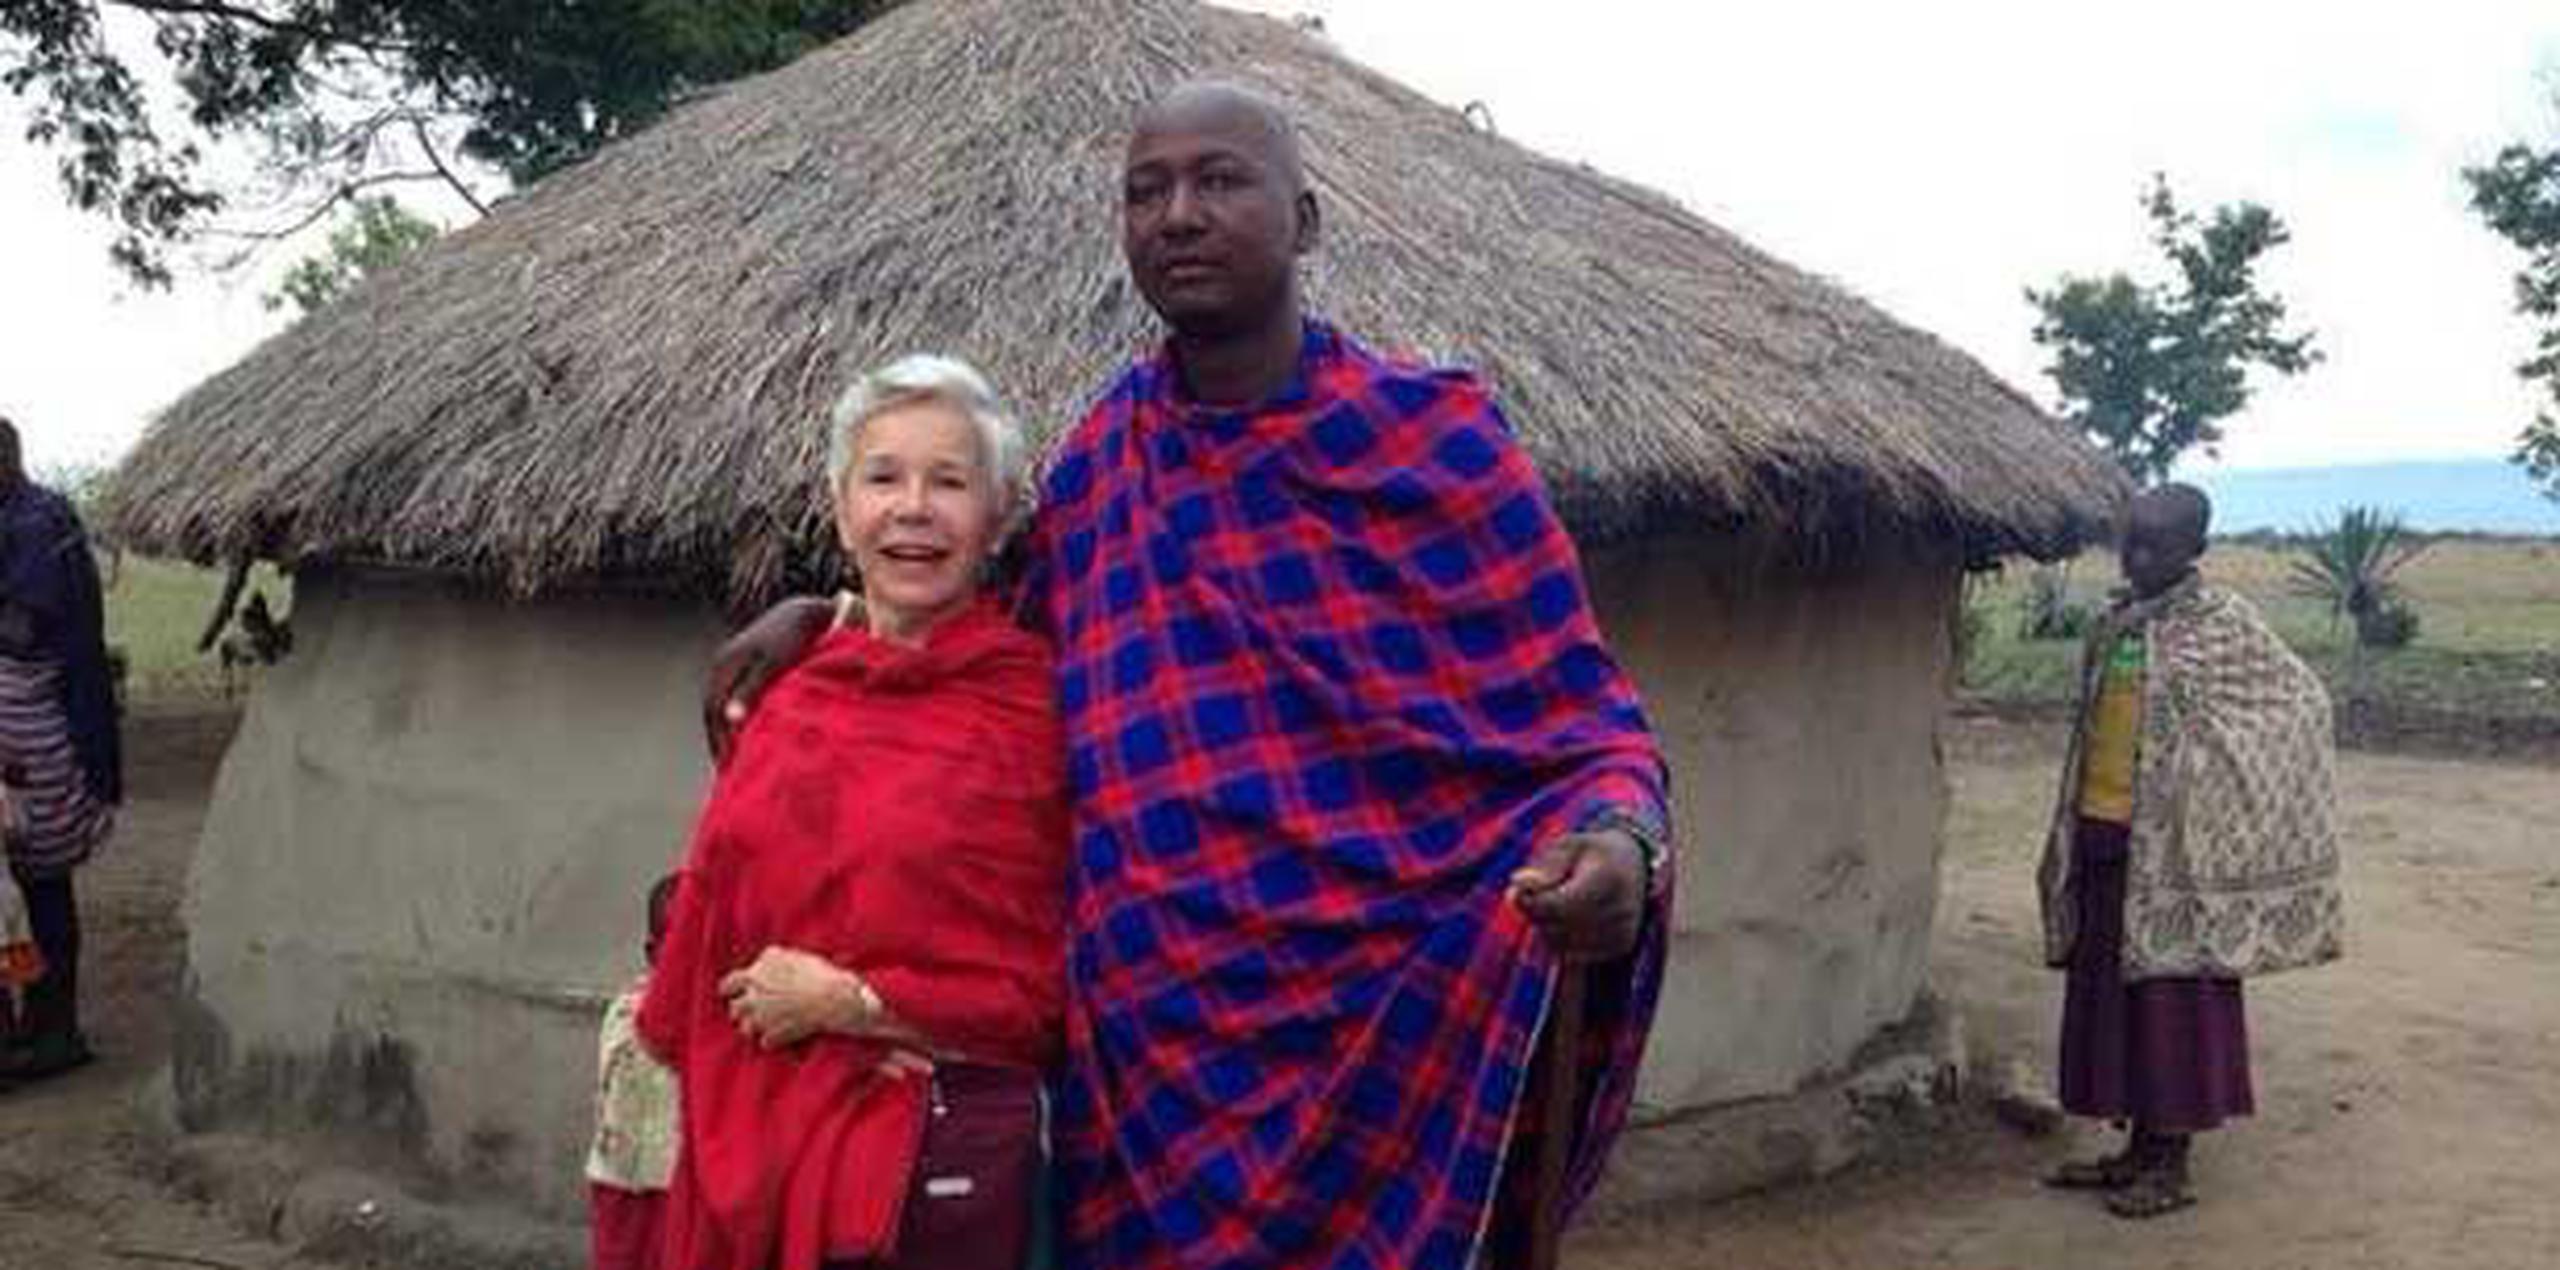 "Esta semana visité una aldea Massai. Su jefe, un hombre joven, intenta que los niños vayan a la escuela", indicó Johanna Rosaly a sus seguidores en Twitter. (@jrosaly0113/Twitter)